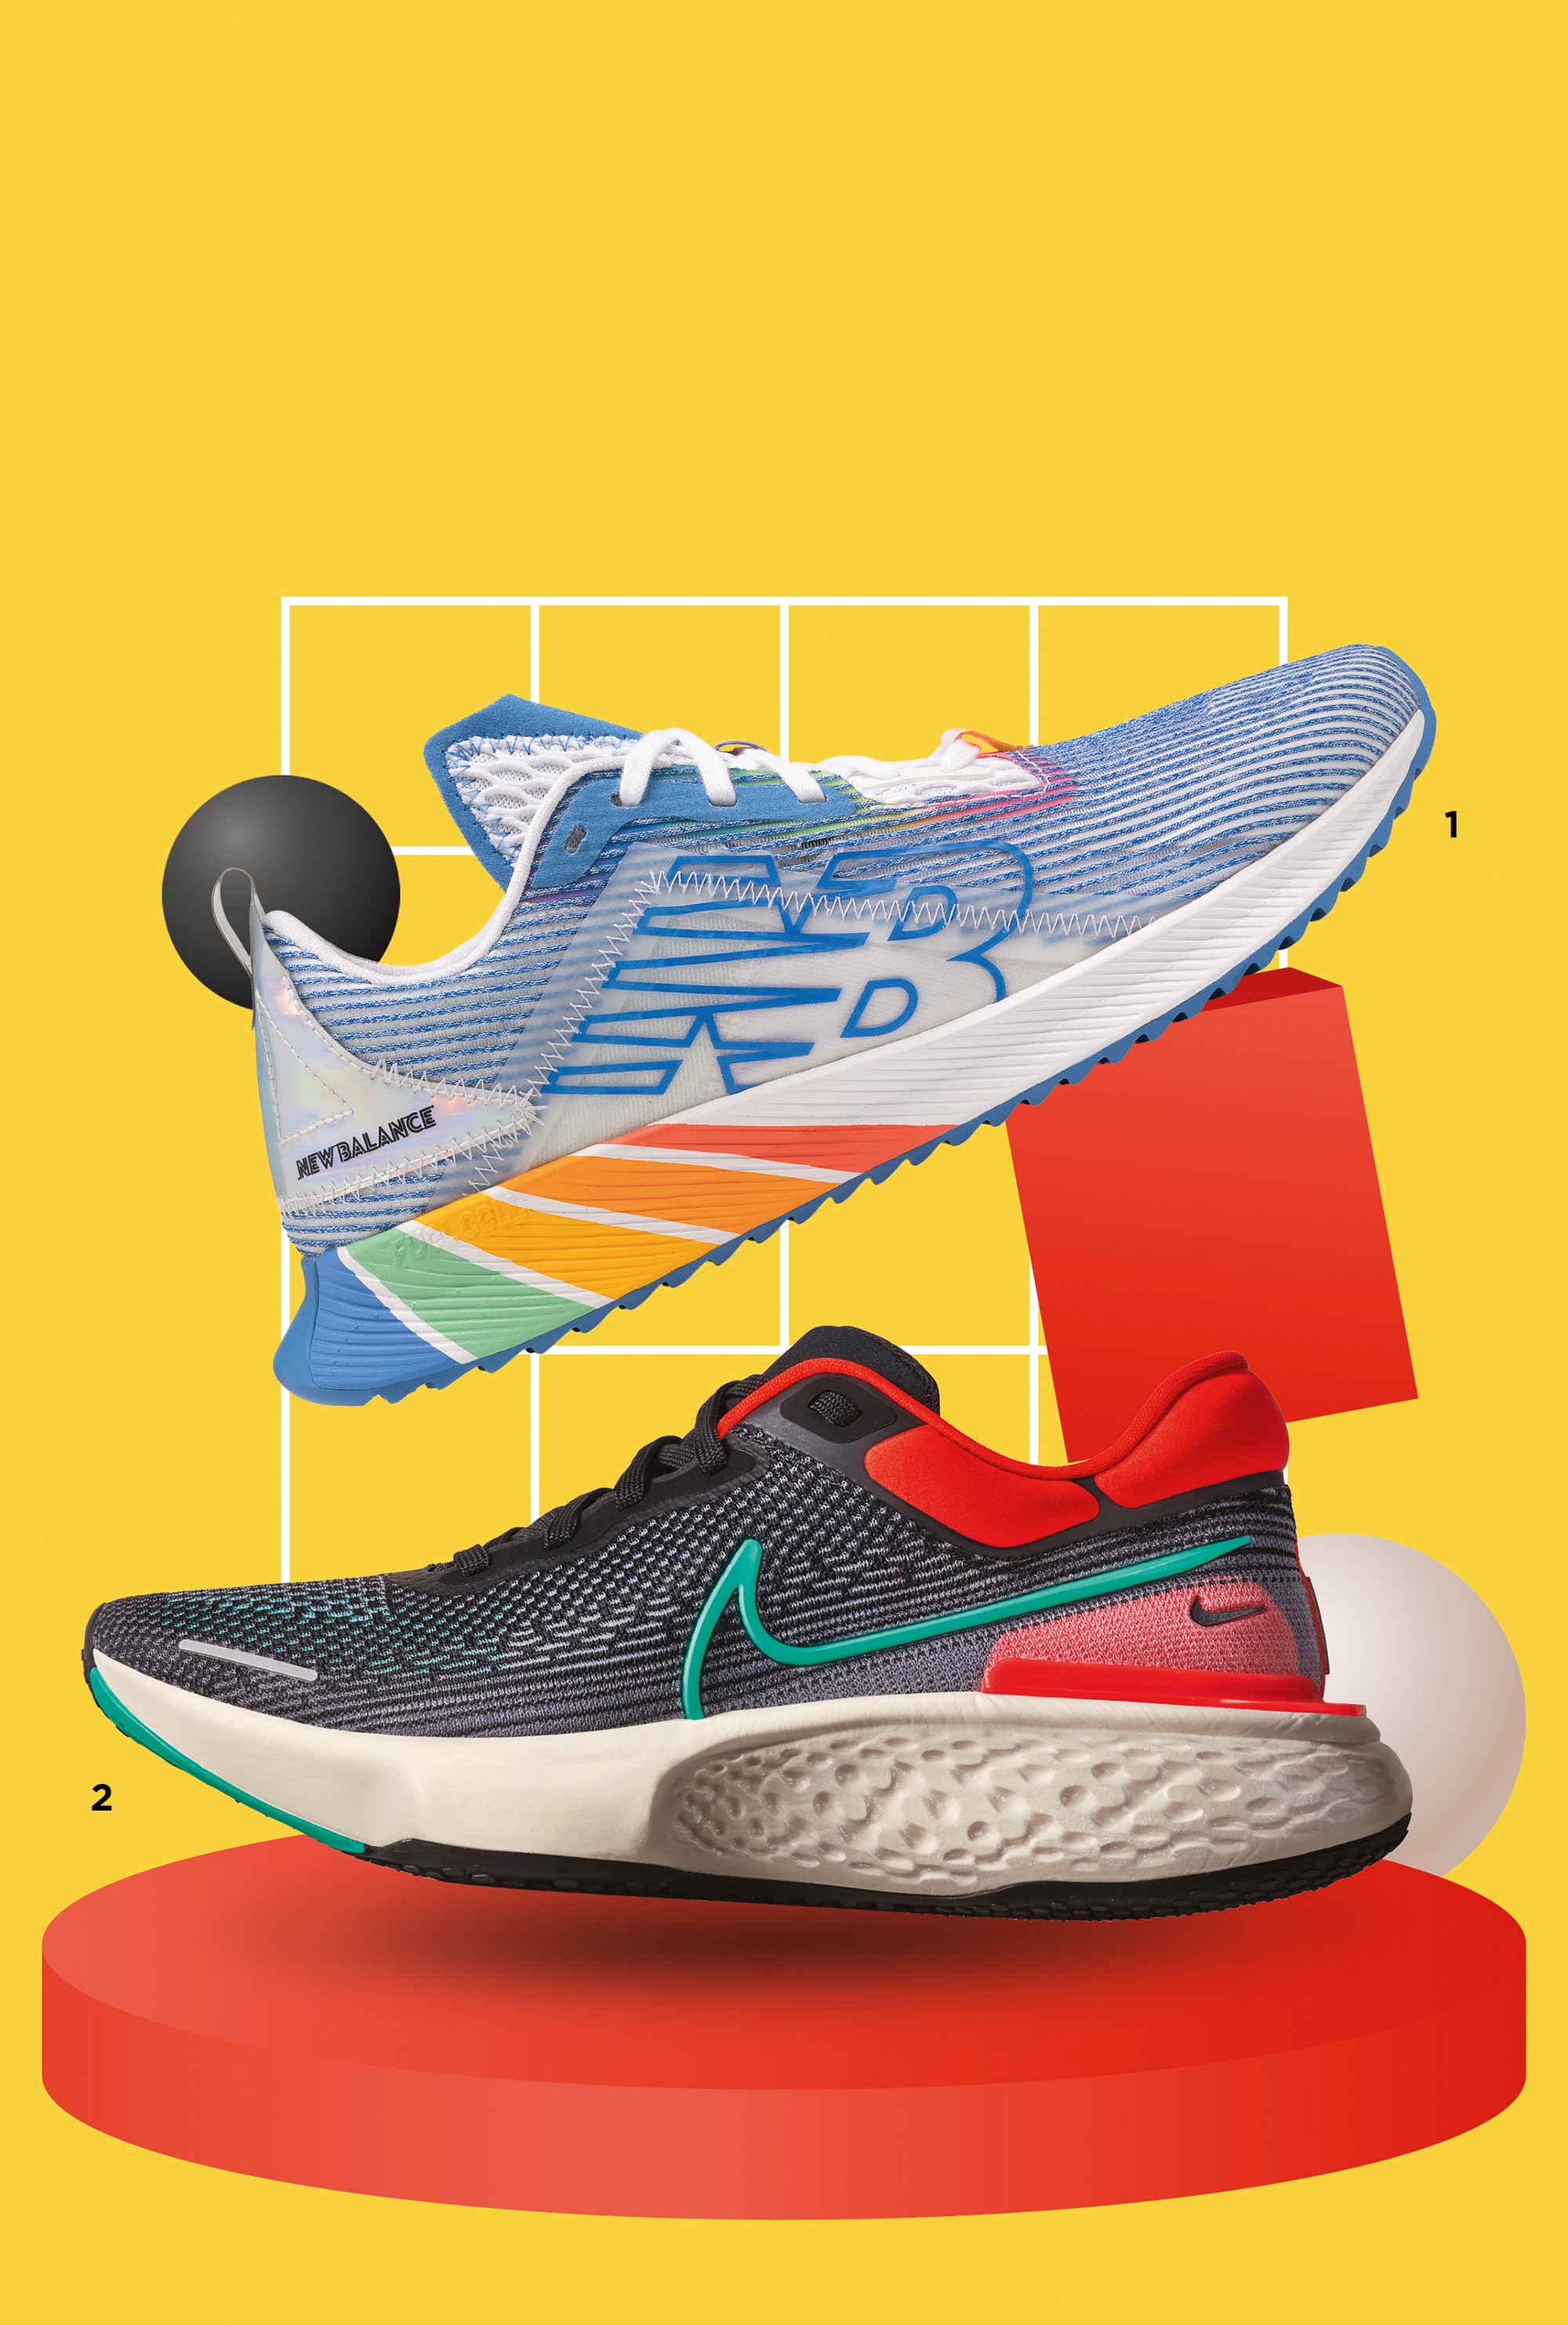 Modo aventura 1. New Balance Echolucent PRIDE preço sob consulta | 2. Nike ZoomX Invincible Run preço sob consulta (Foto: divulgação)